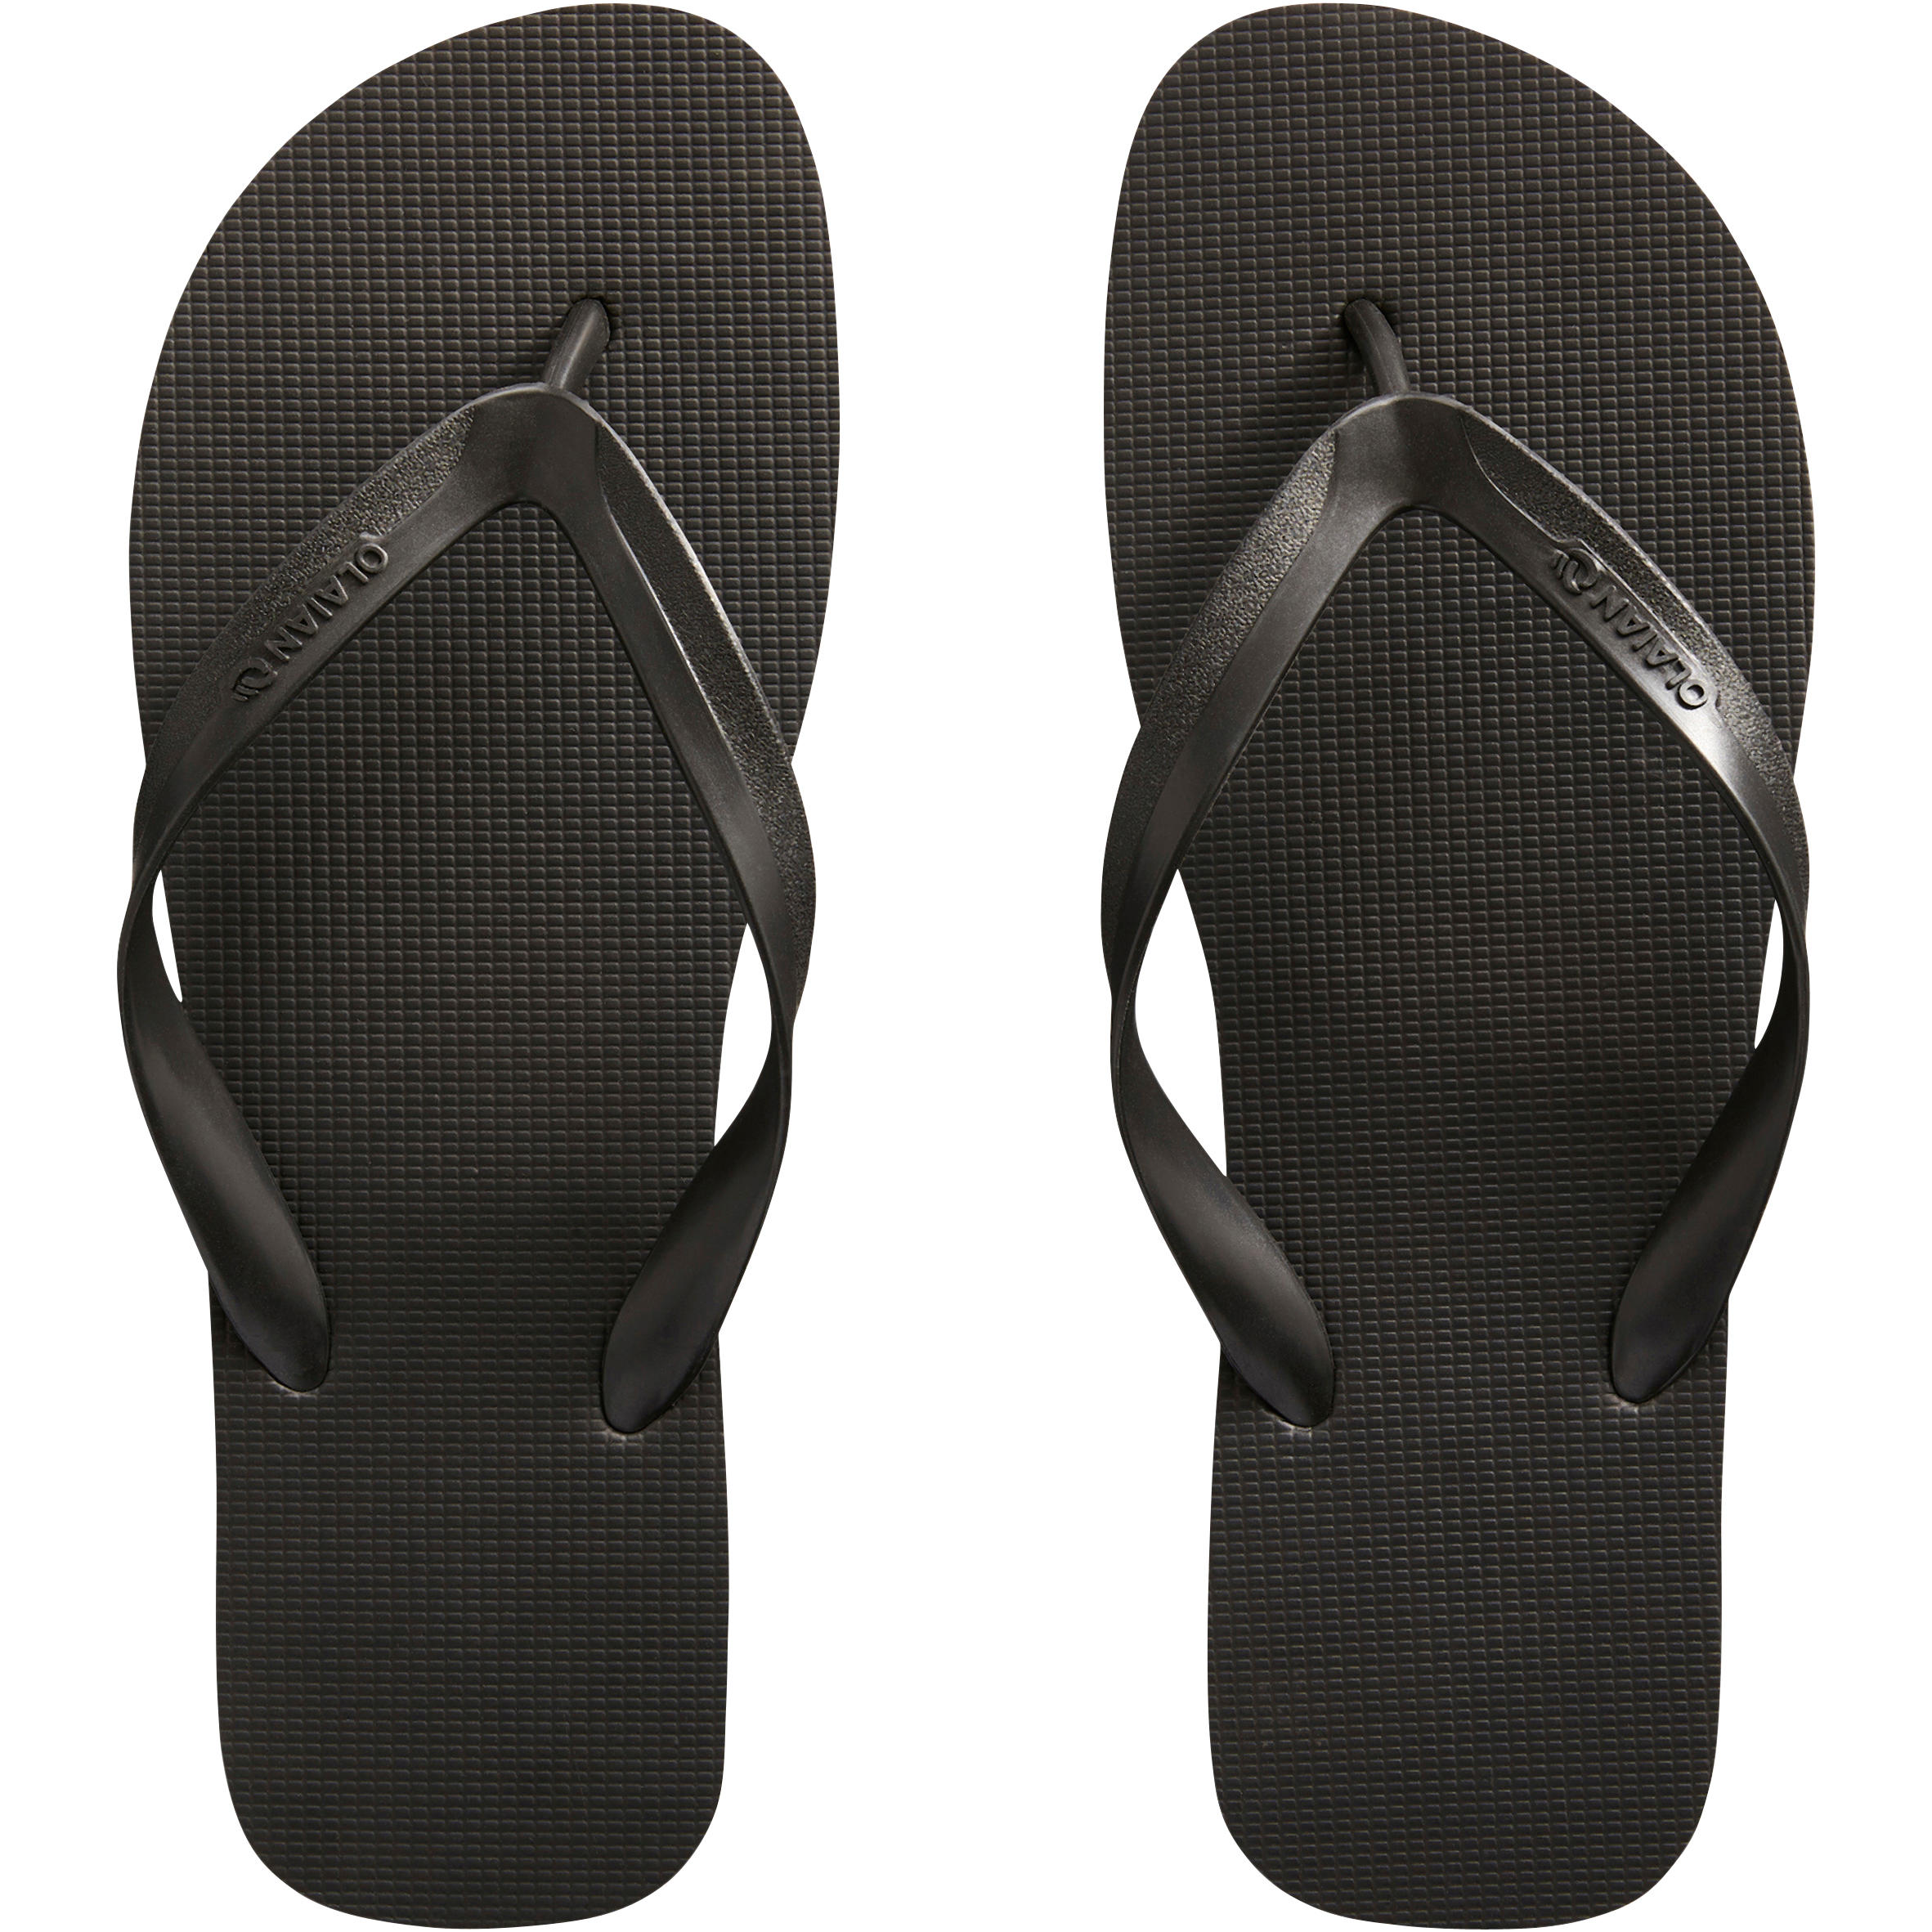 decathlon men's flip flops